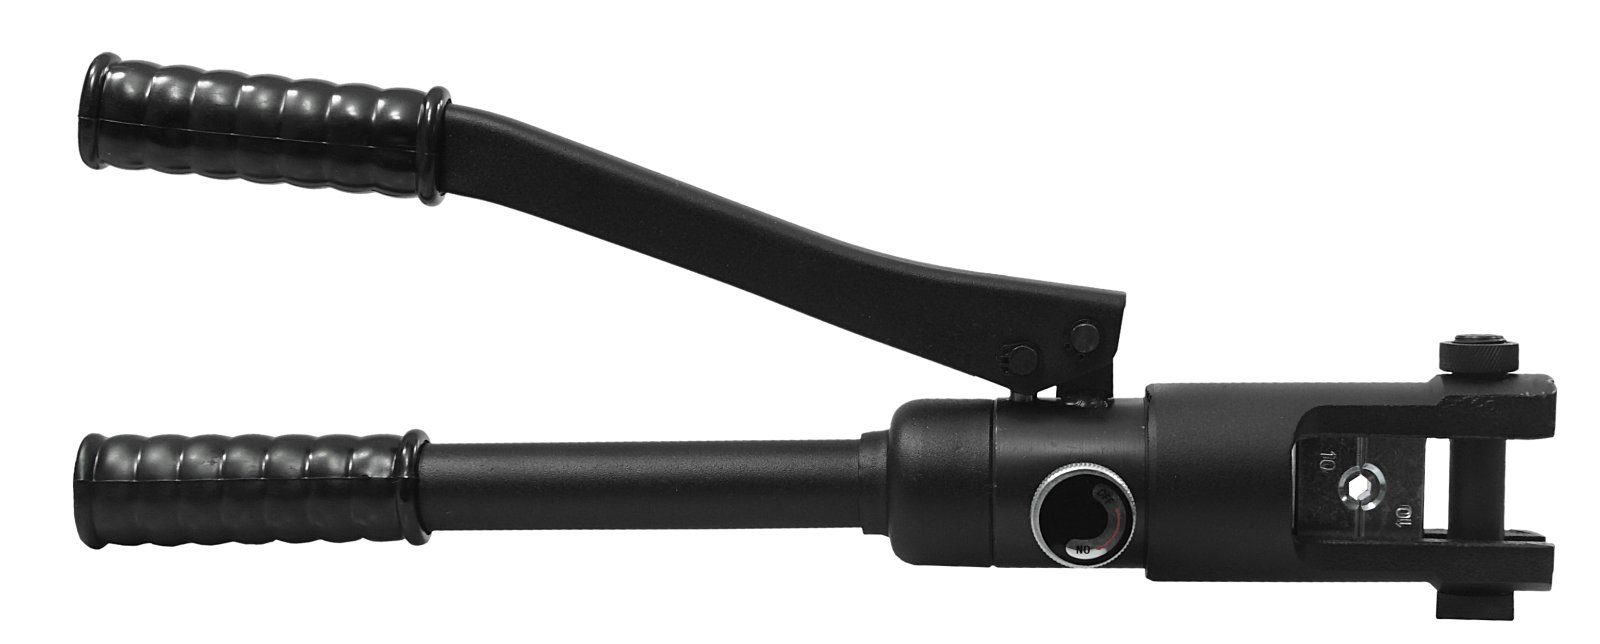 mm² Presszange 6-240 16-240mm² - Kabelschuhe für Hydr. Lötkabelschuh, Serien-/Parallelverbinder Hydraulische Presszange Crimpzange ADELID